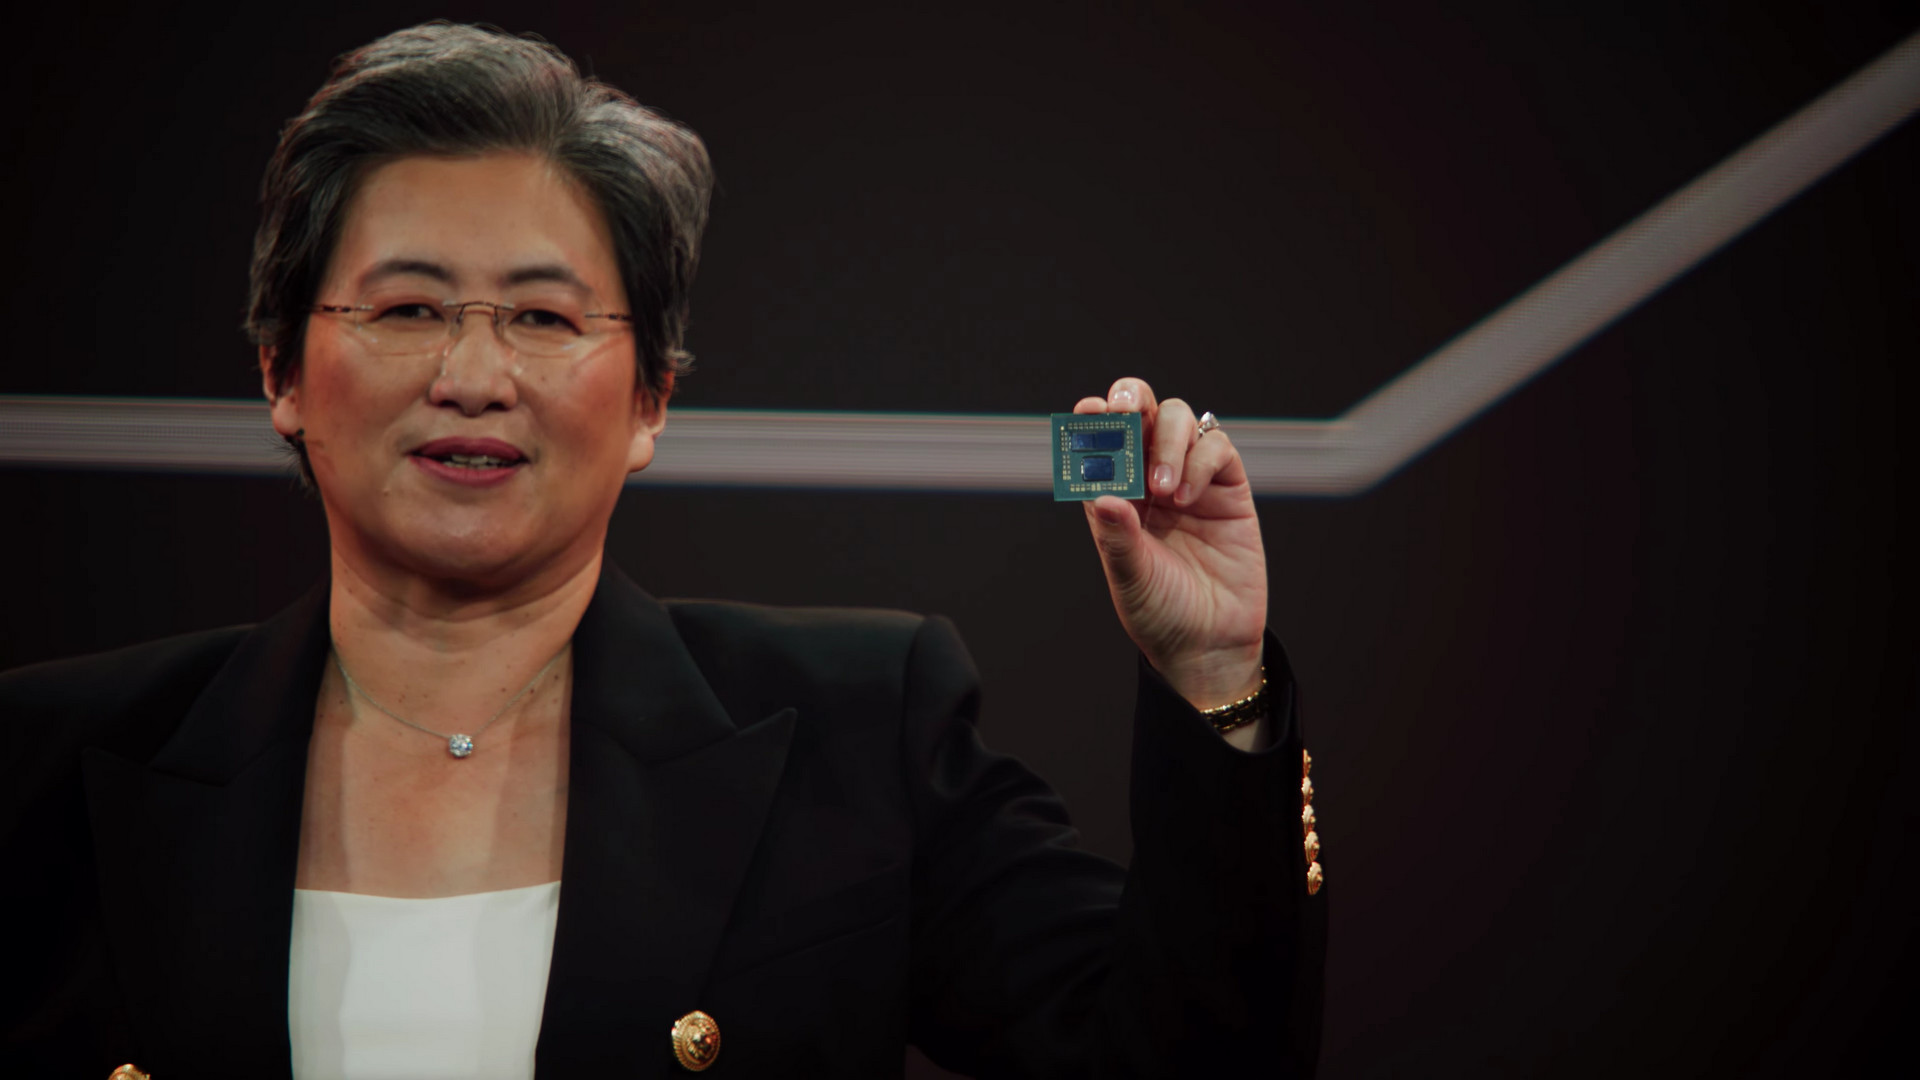 AMD-Computex 2021-35.53.863